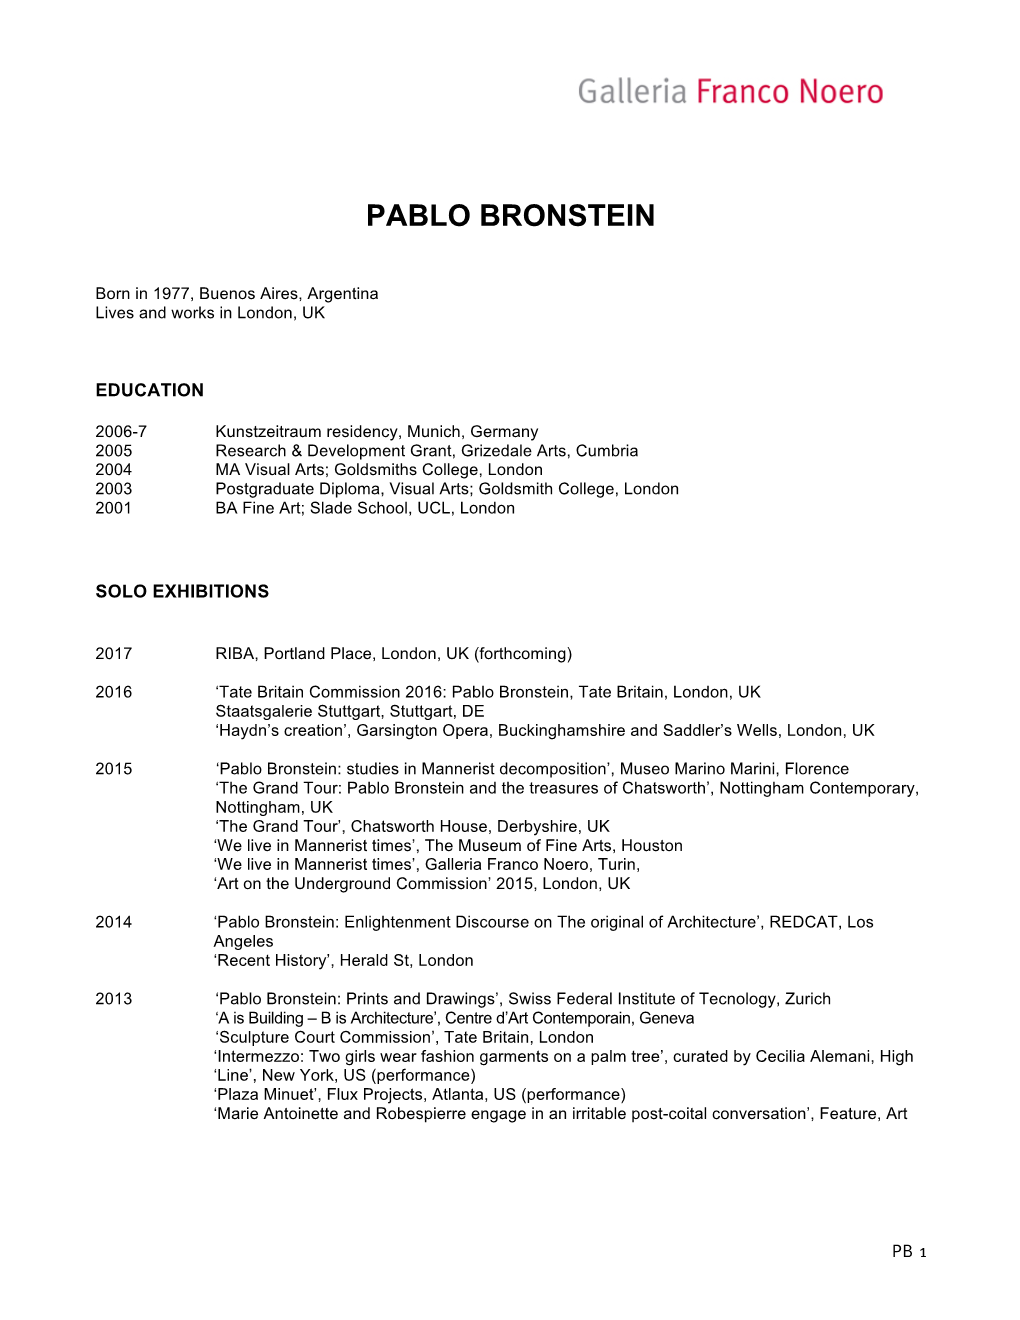 CV Pablo Bronstein